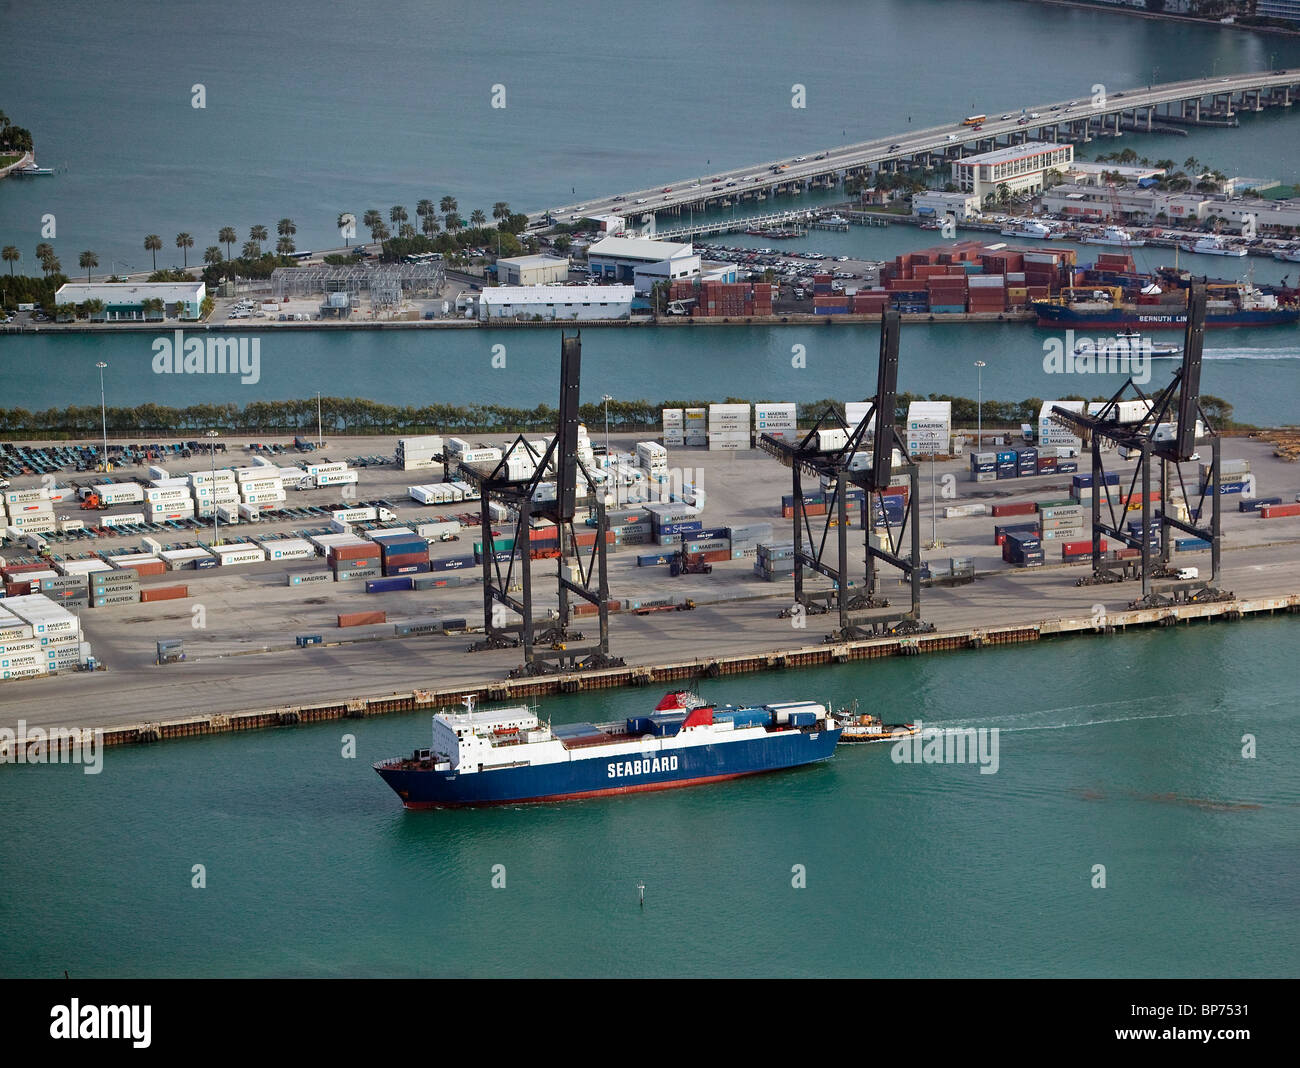 Vue aérienne au-dessus du port de Miami en Floride Banque D'Images